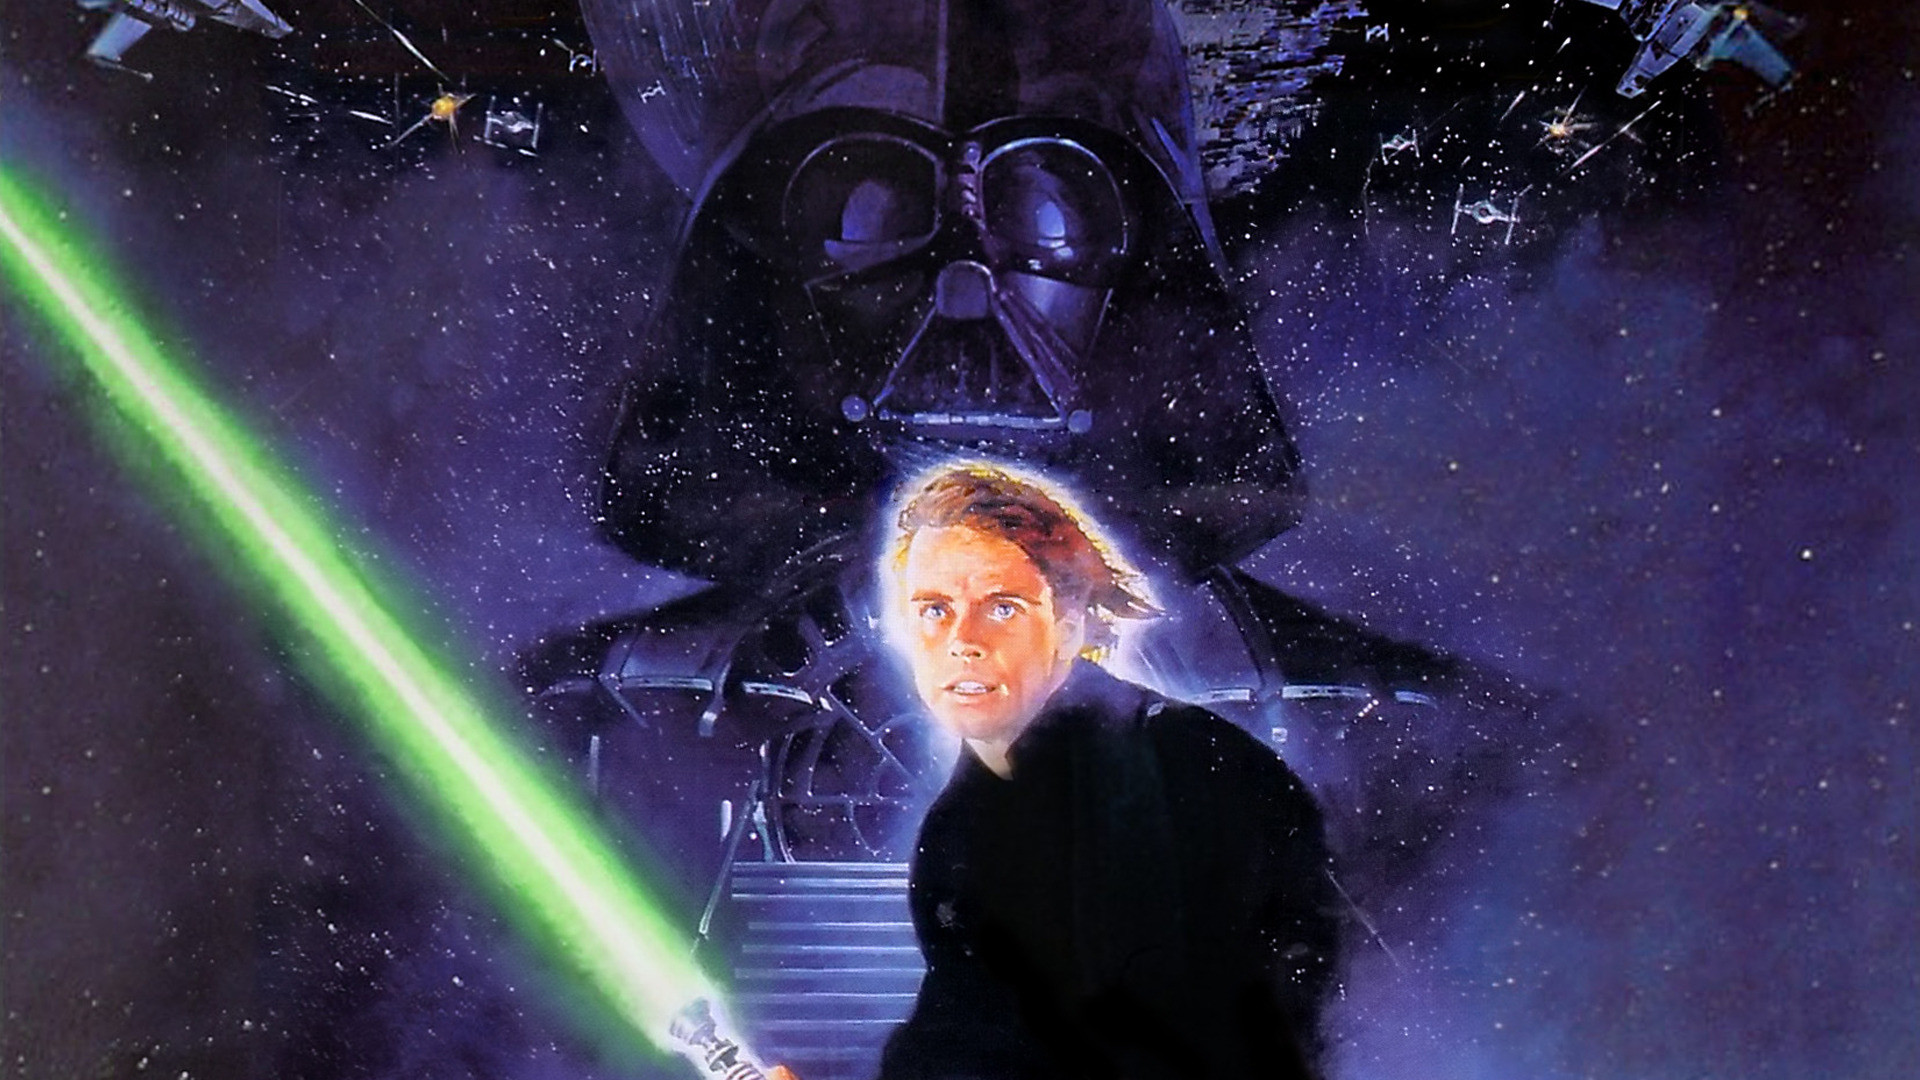 Young Jedi Luke Skywalker Wallpapers